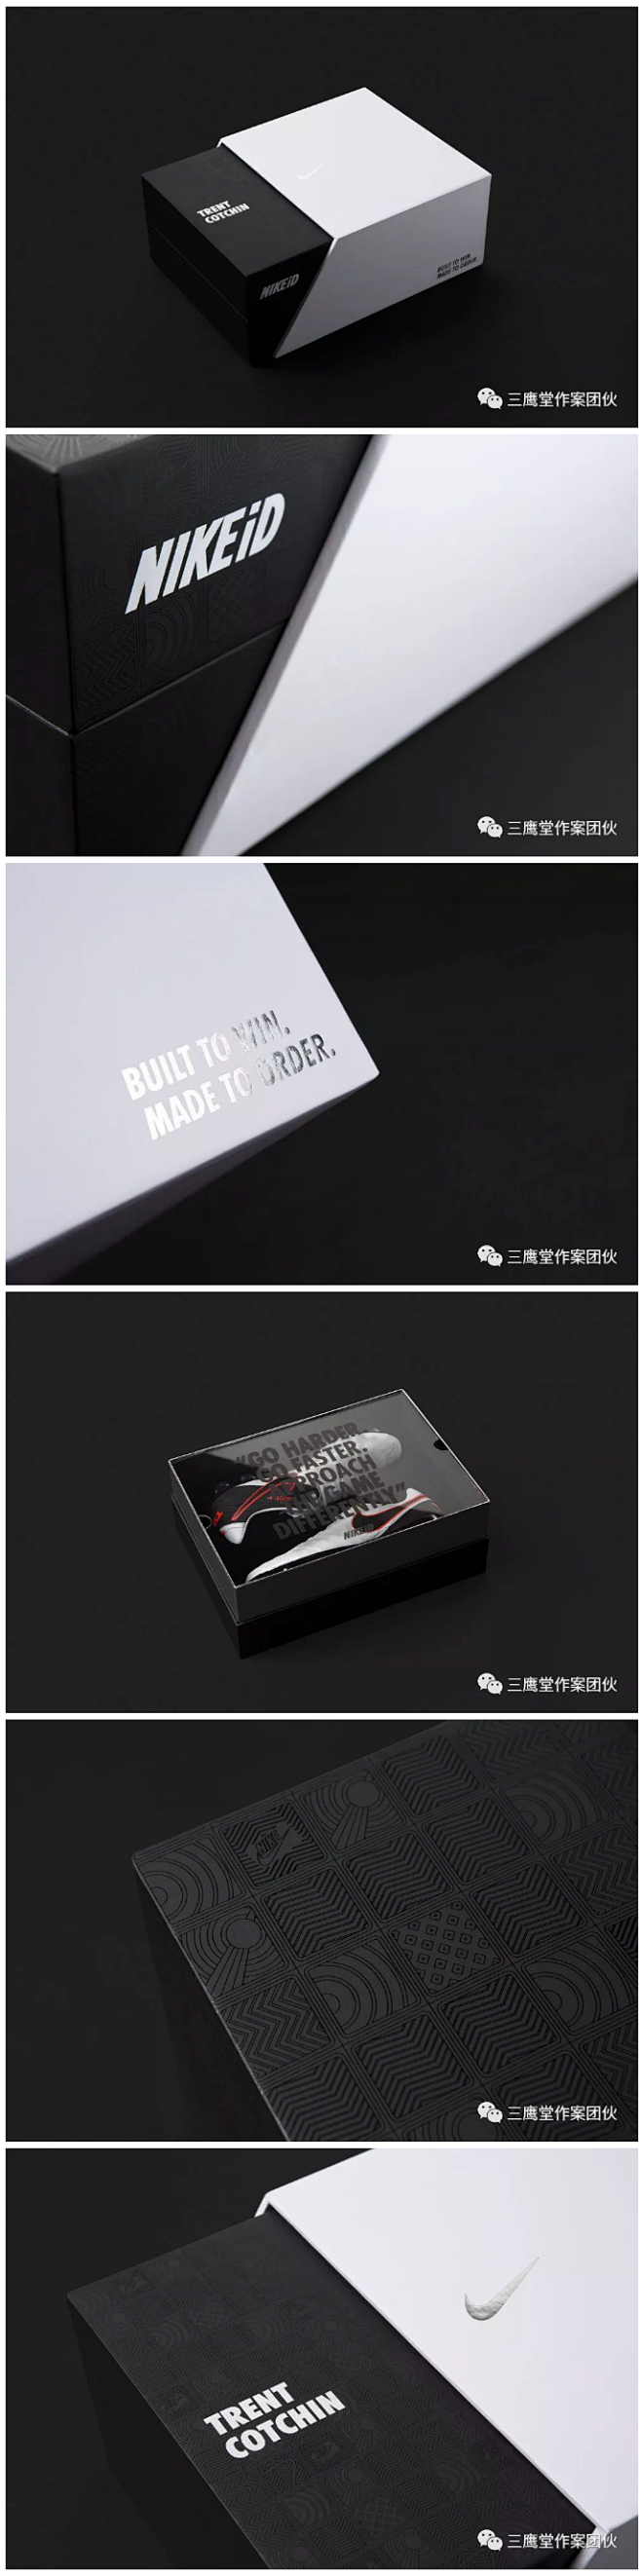 欣赏15款精美的特别版Nike鞋包装设计